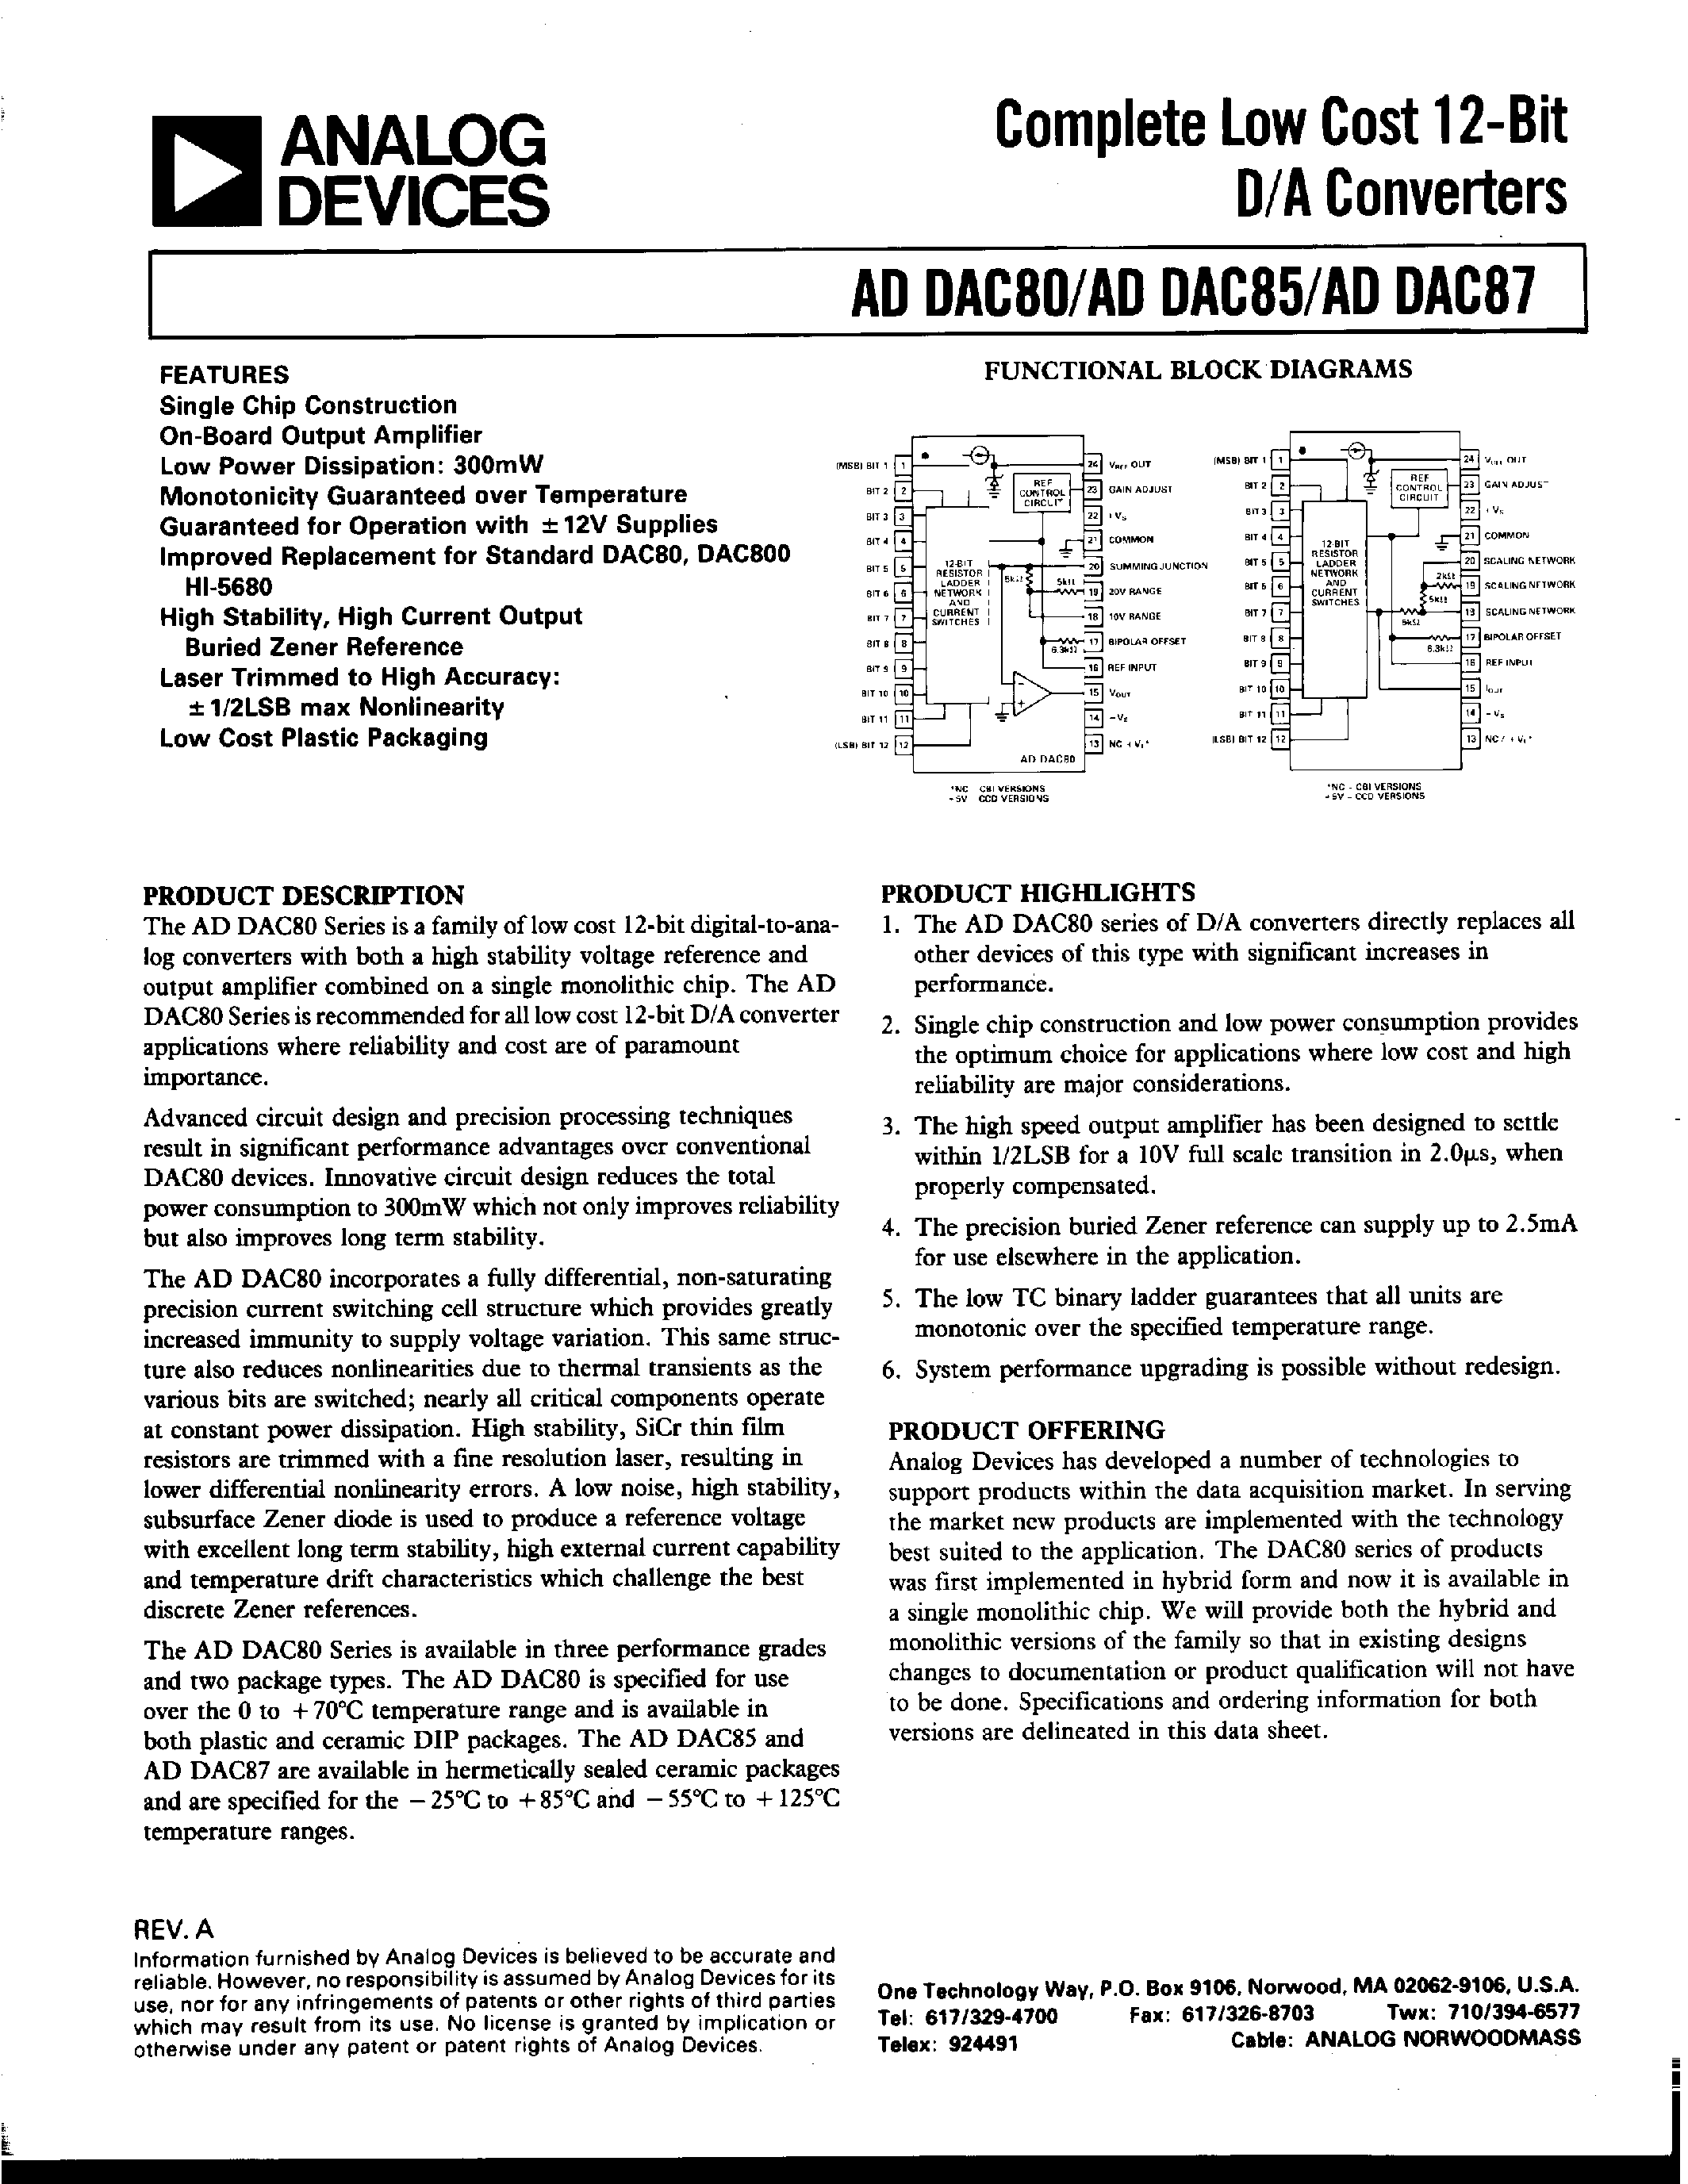 Даташит ADDAC80-CCD-I - COMPLETE LOW COST 12-BIT D/A CONVERTERS страница 1